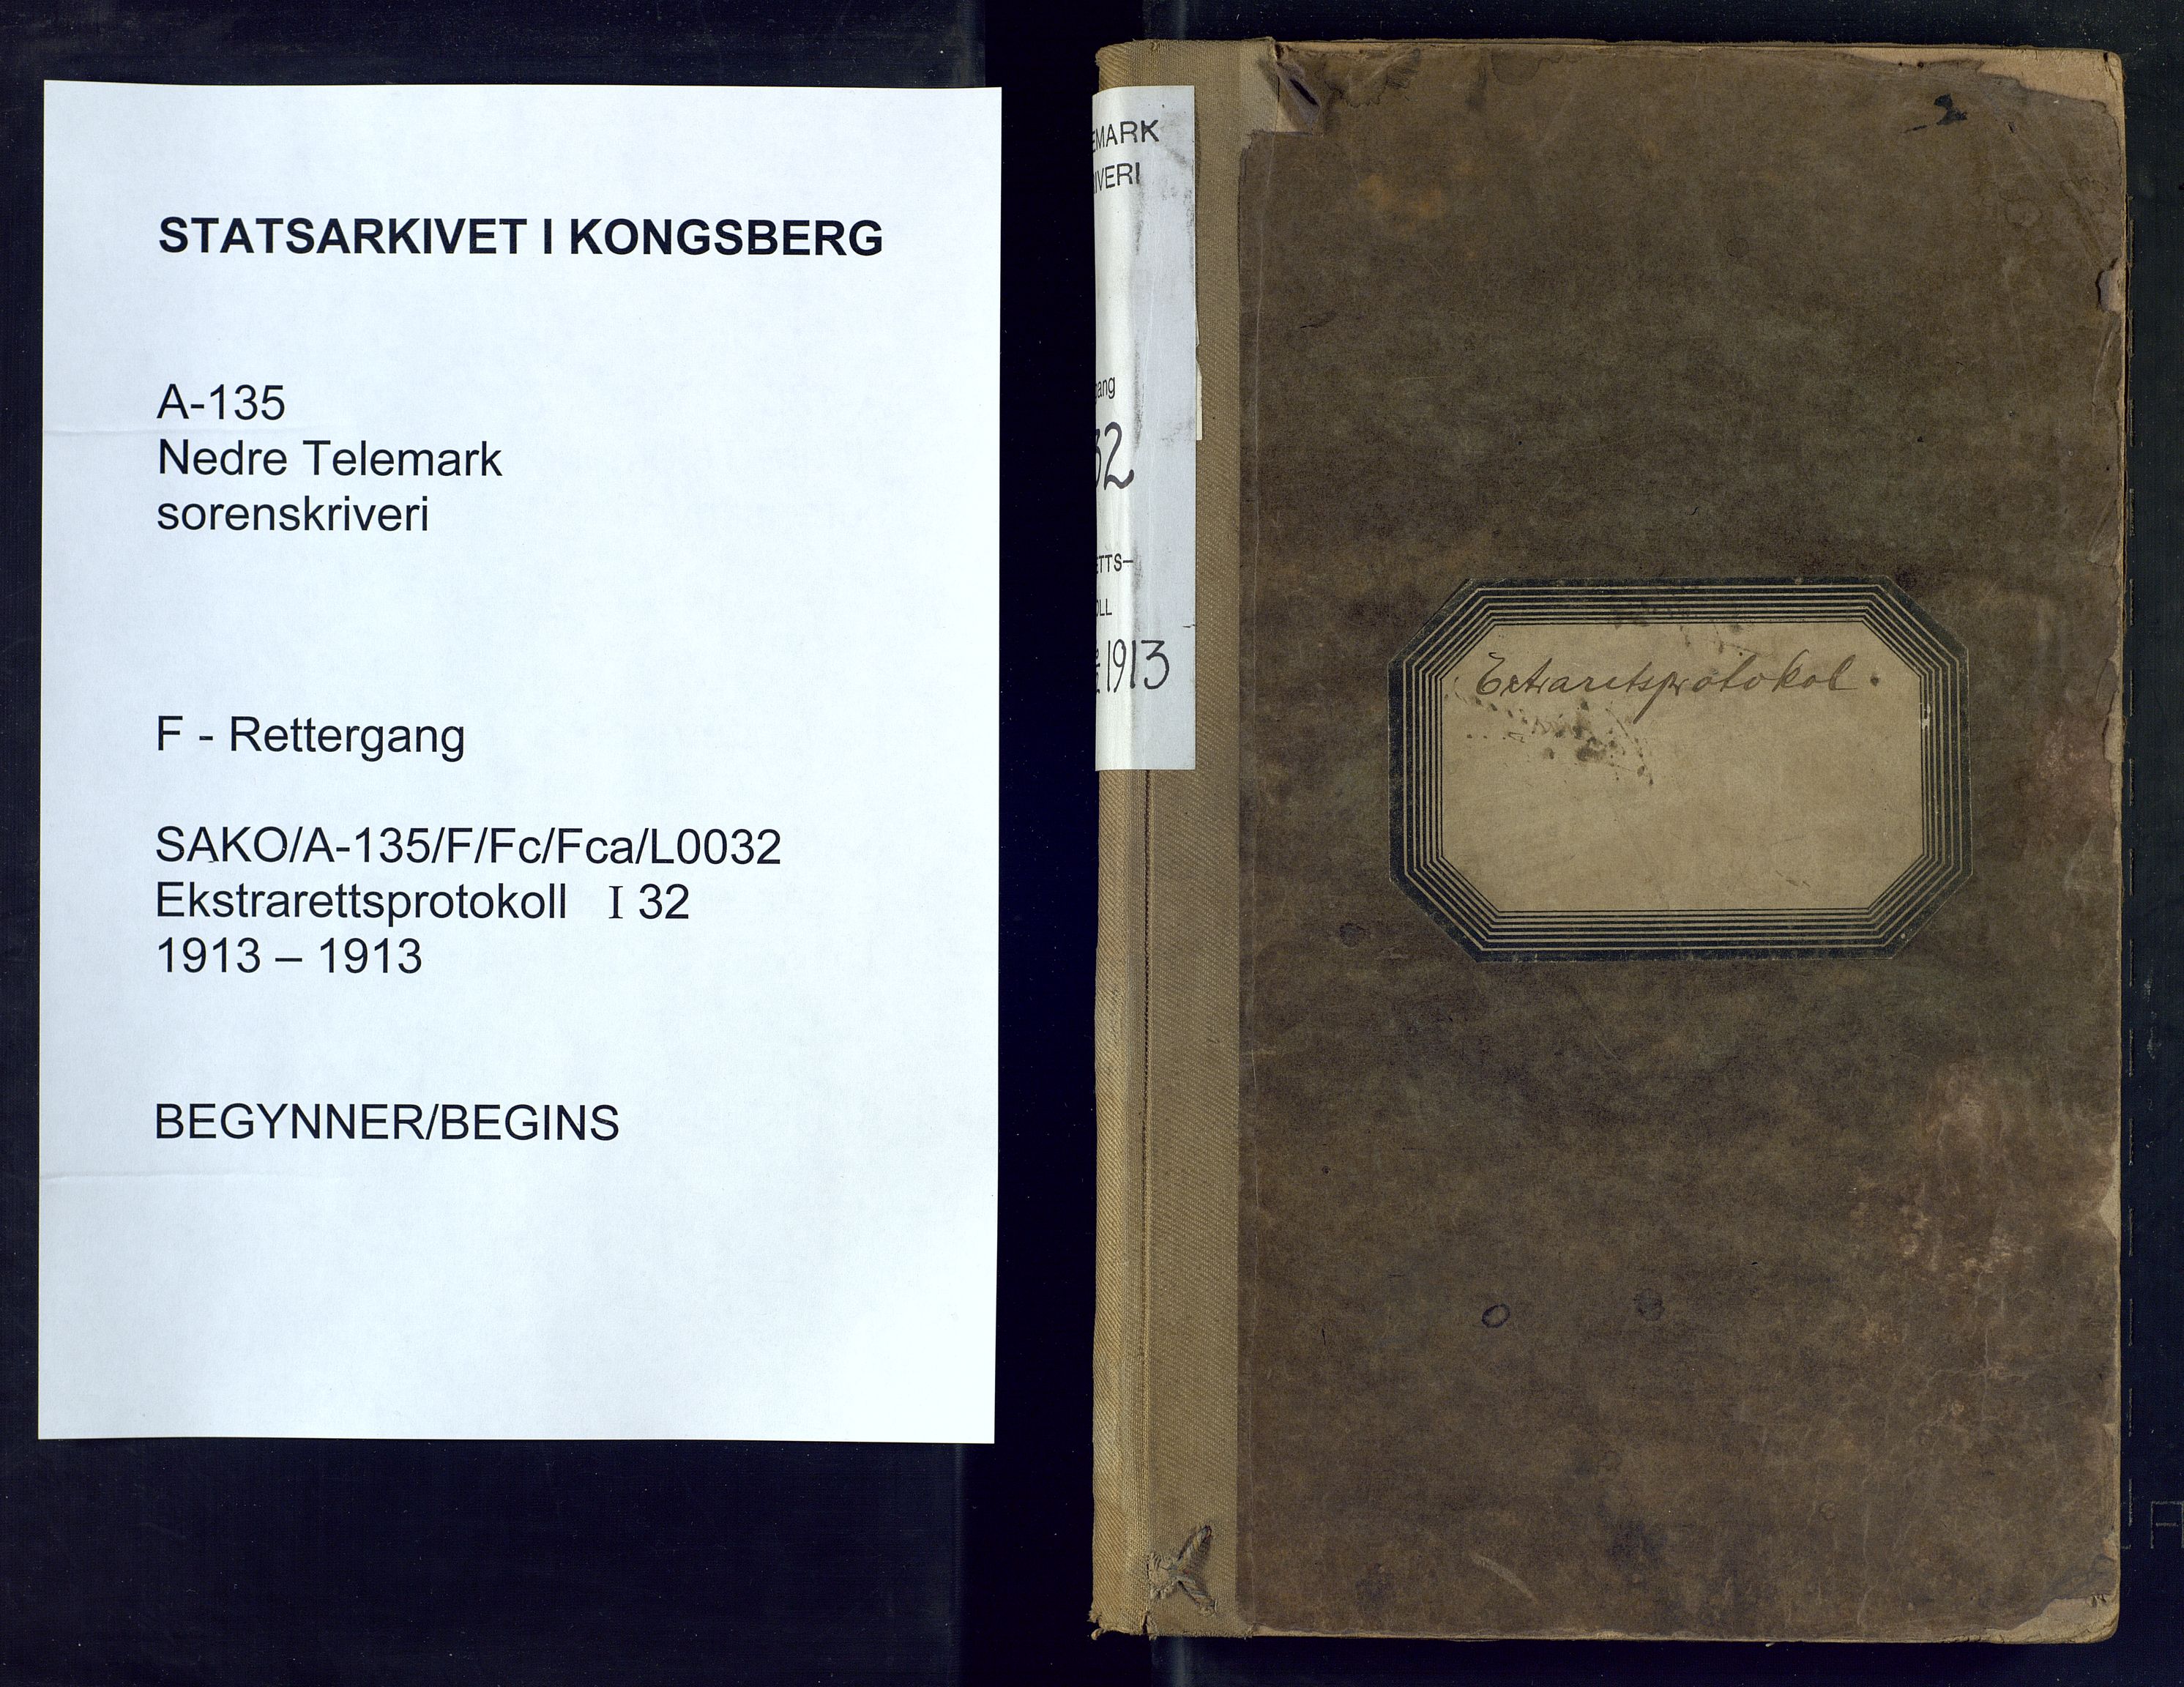 Nedre Telemark sorenskriveri, SAKO/A-135/F/Fc/Fca/L0032: Ekstrarettsprotokoll, 1913